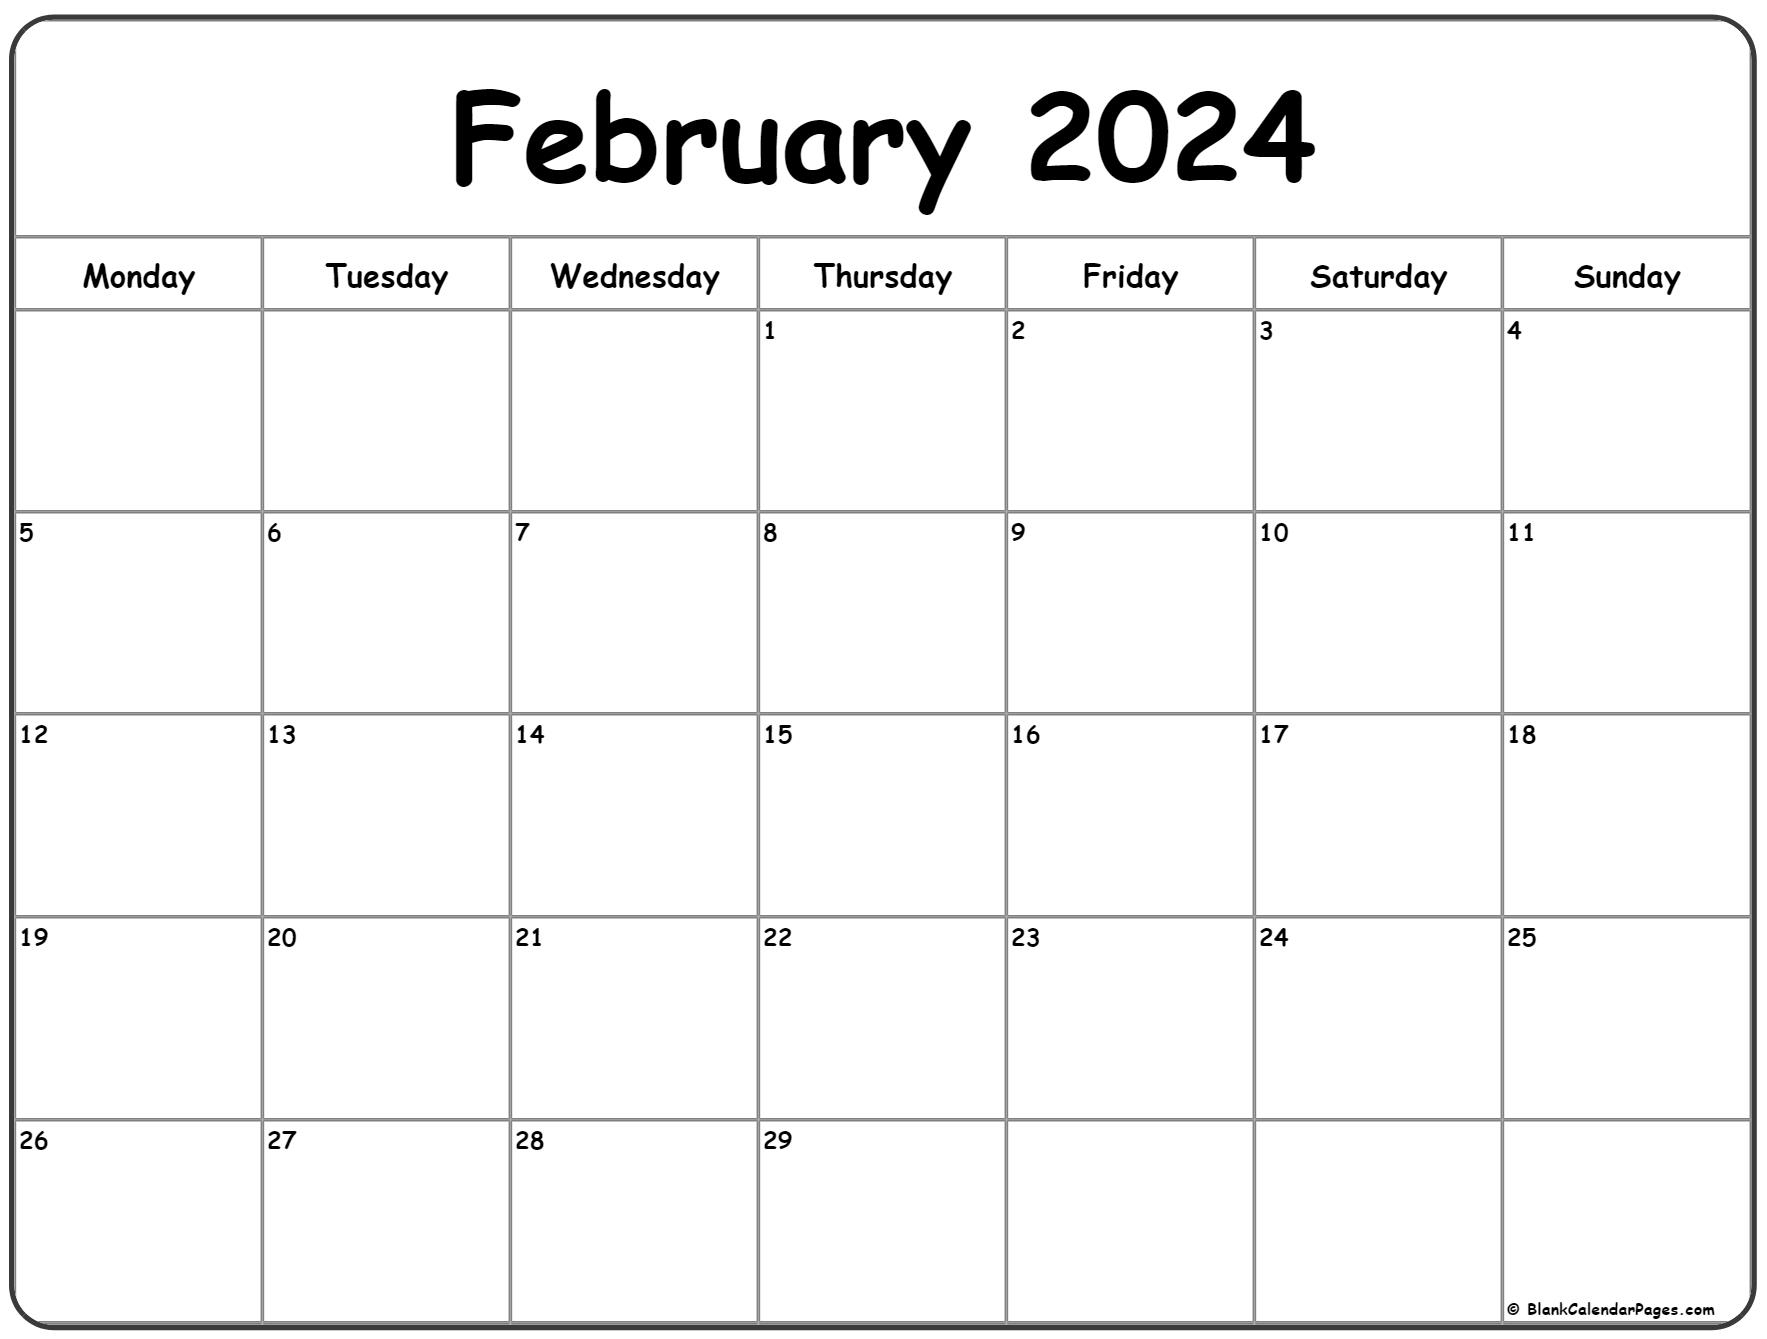 February 2024 Monday Calendar | Monday To Sunday for February Calendar Printable 2024